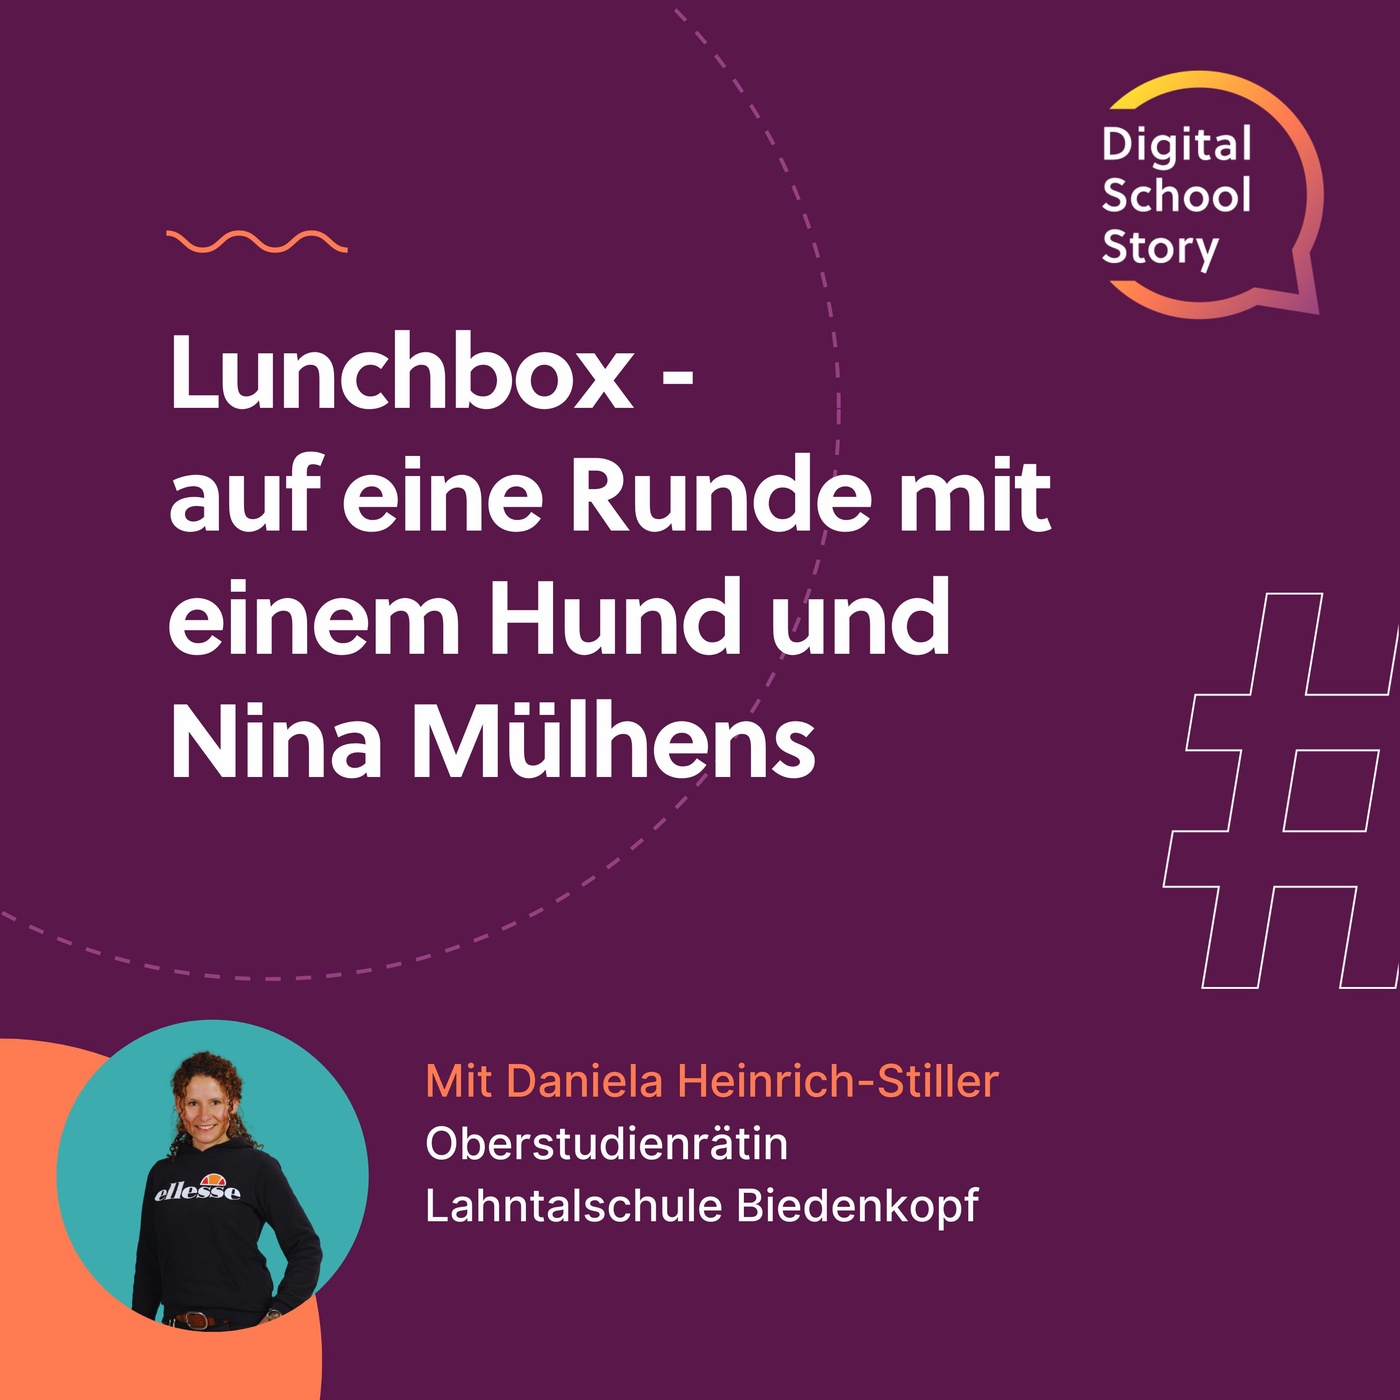 #32 Daniela Heinrich-Stiller bei der #lunchbox